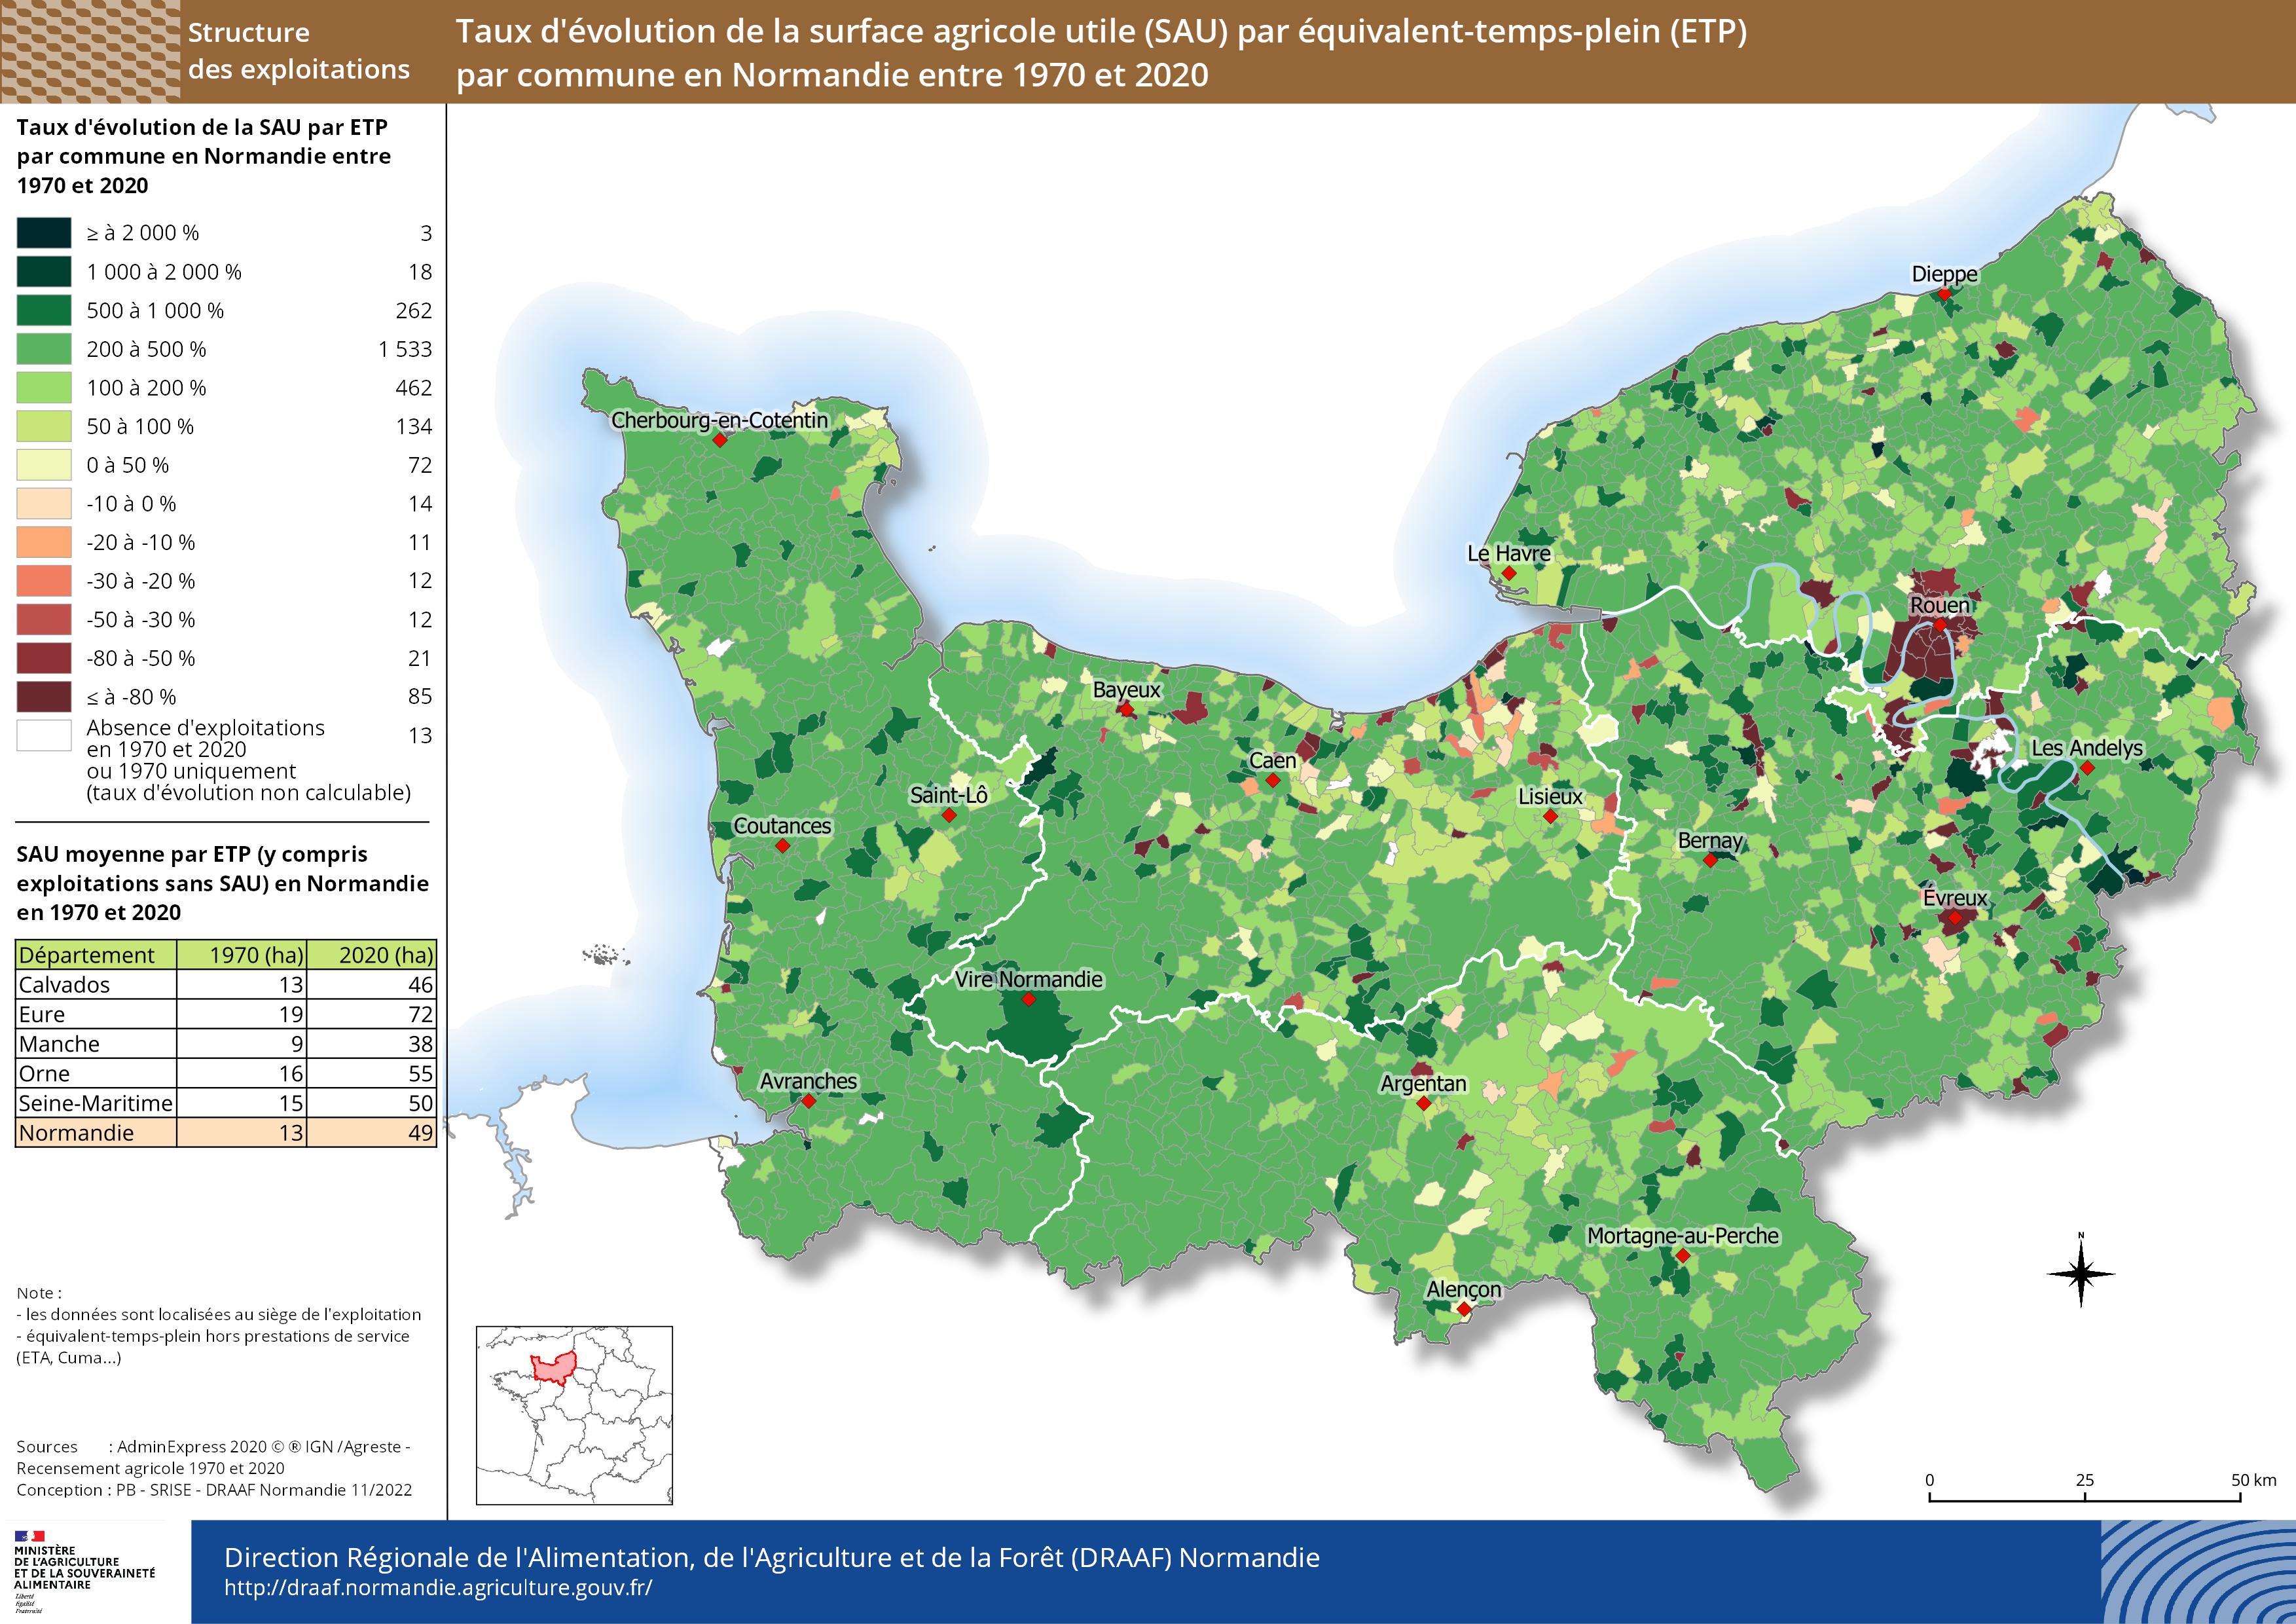 carte représentant le taux d'évolution de la surface agricole (SAU) par équivalent-temps-plein par commune en Normandie entre 1970 et 2020